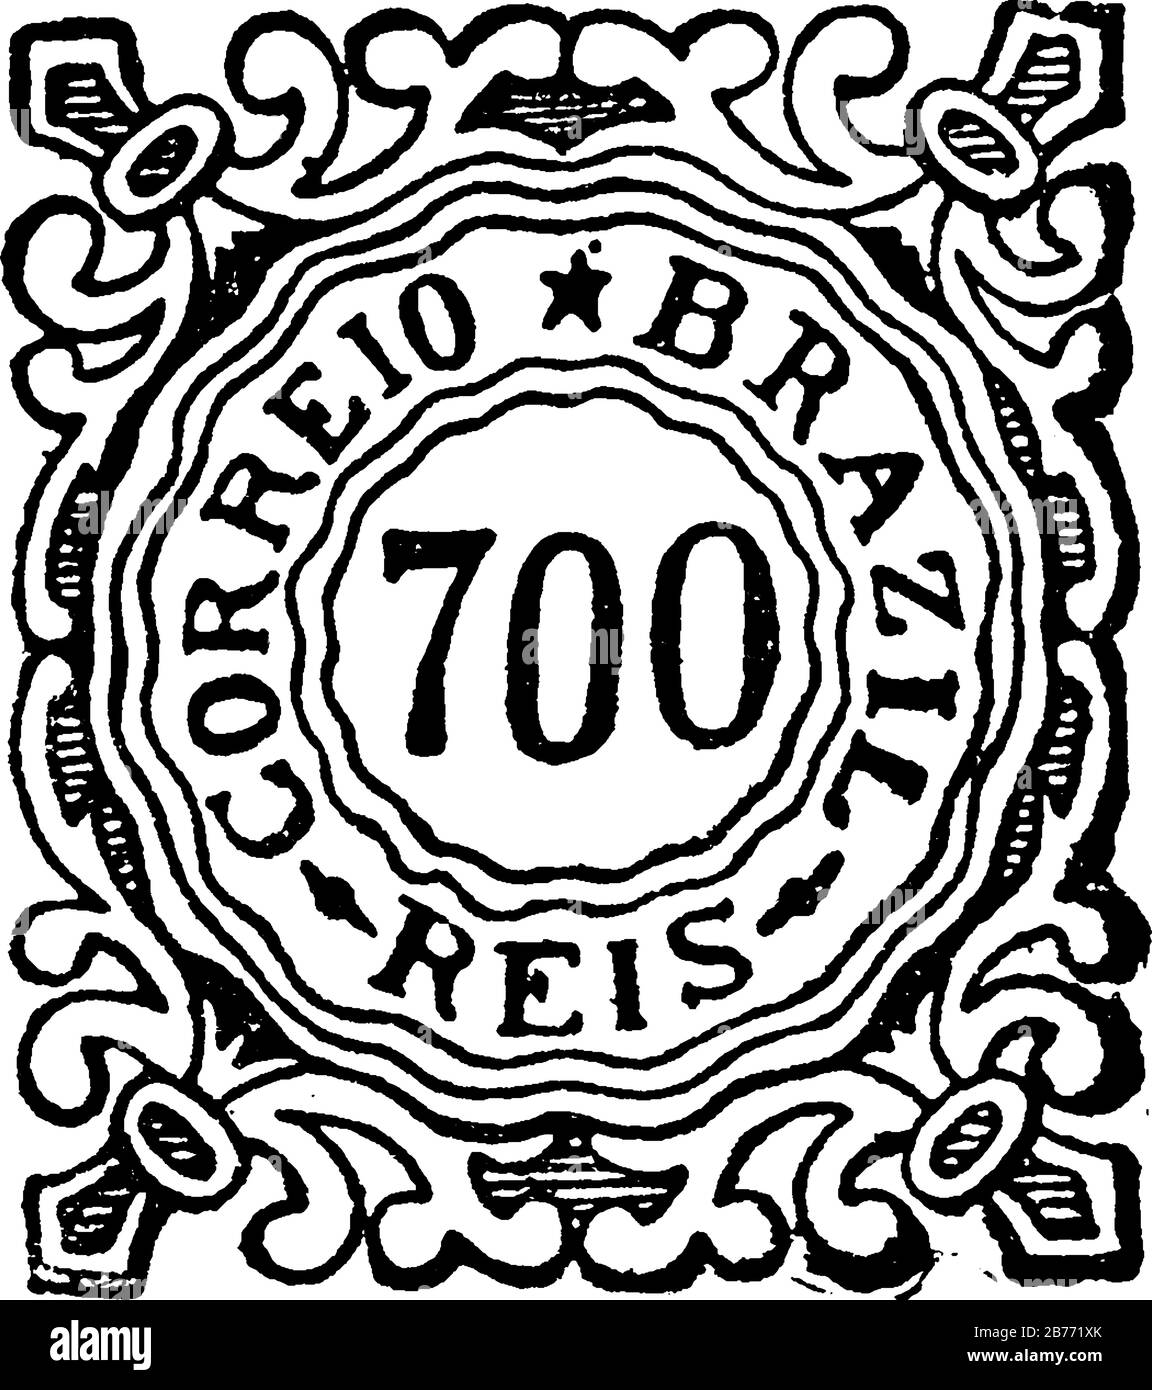 Brazil Stamp (700 reis) dal 1887-1888, un piccolo pezzo adesivo di carta è stato attaccato a qualcosa per mostrare una quantità di denaro pagato, principalmente un francobollo Illustrazione Vettoriale